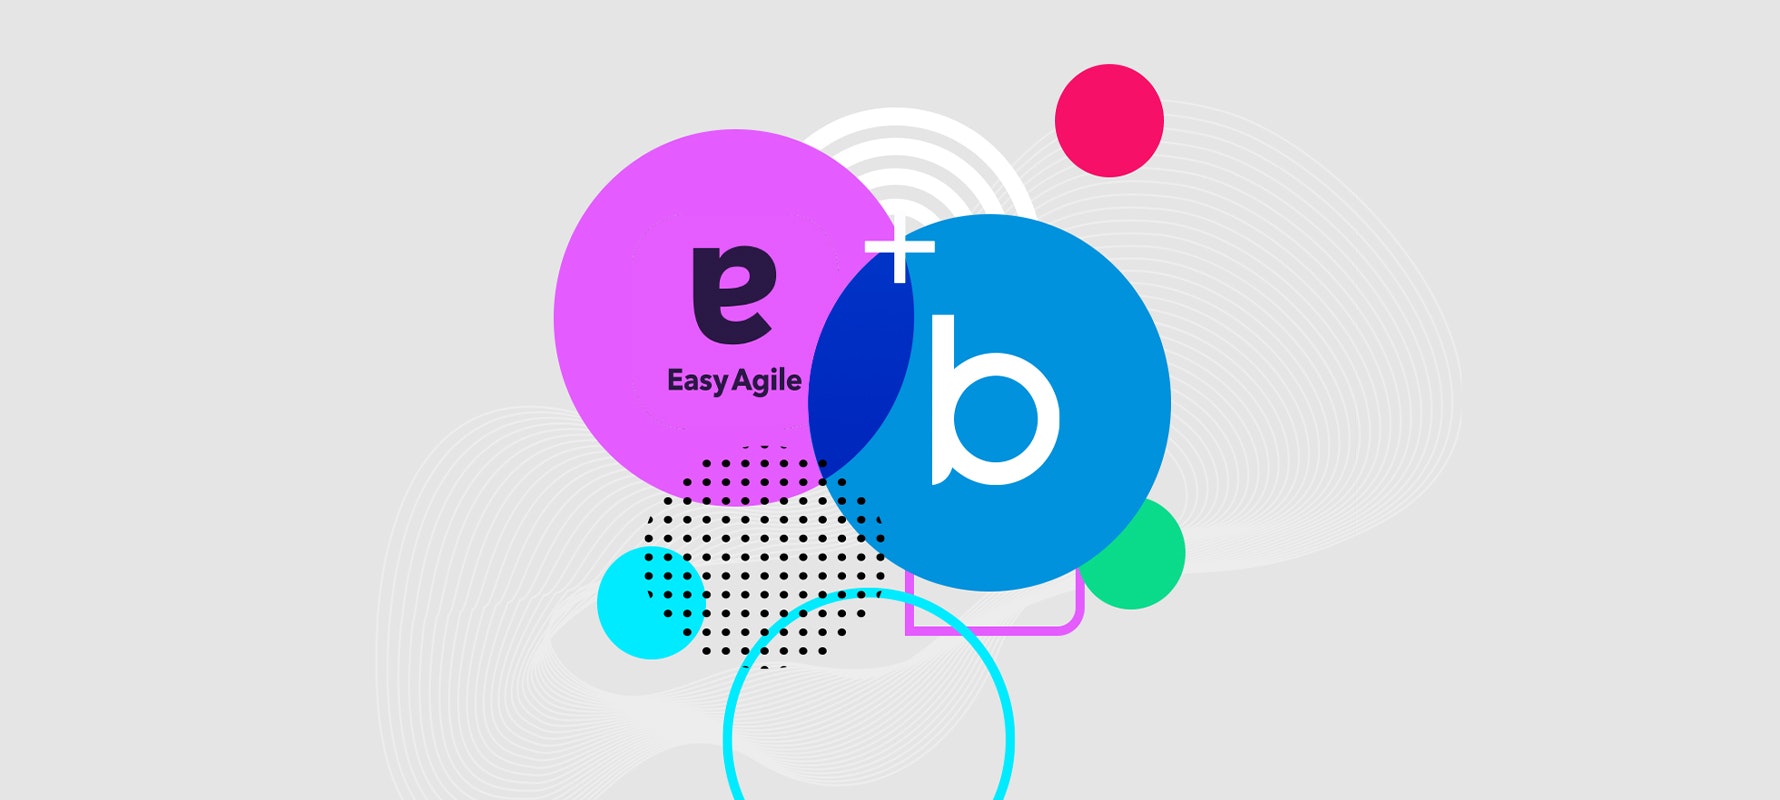 Logos von Easy Agile und brainbits überlappend, um die Zusammenarbeit auszudrücken.